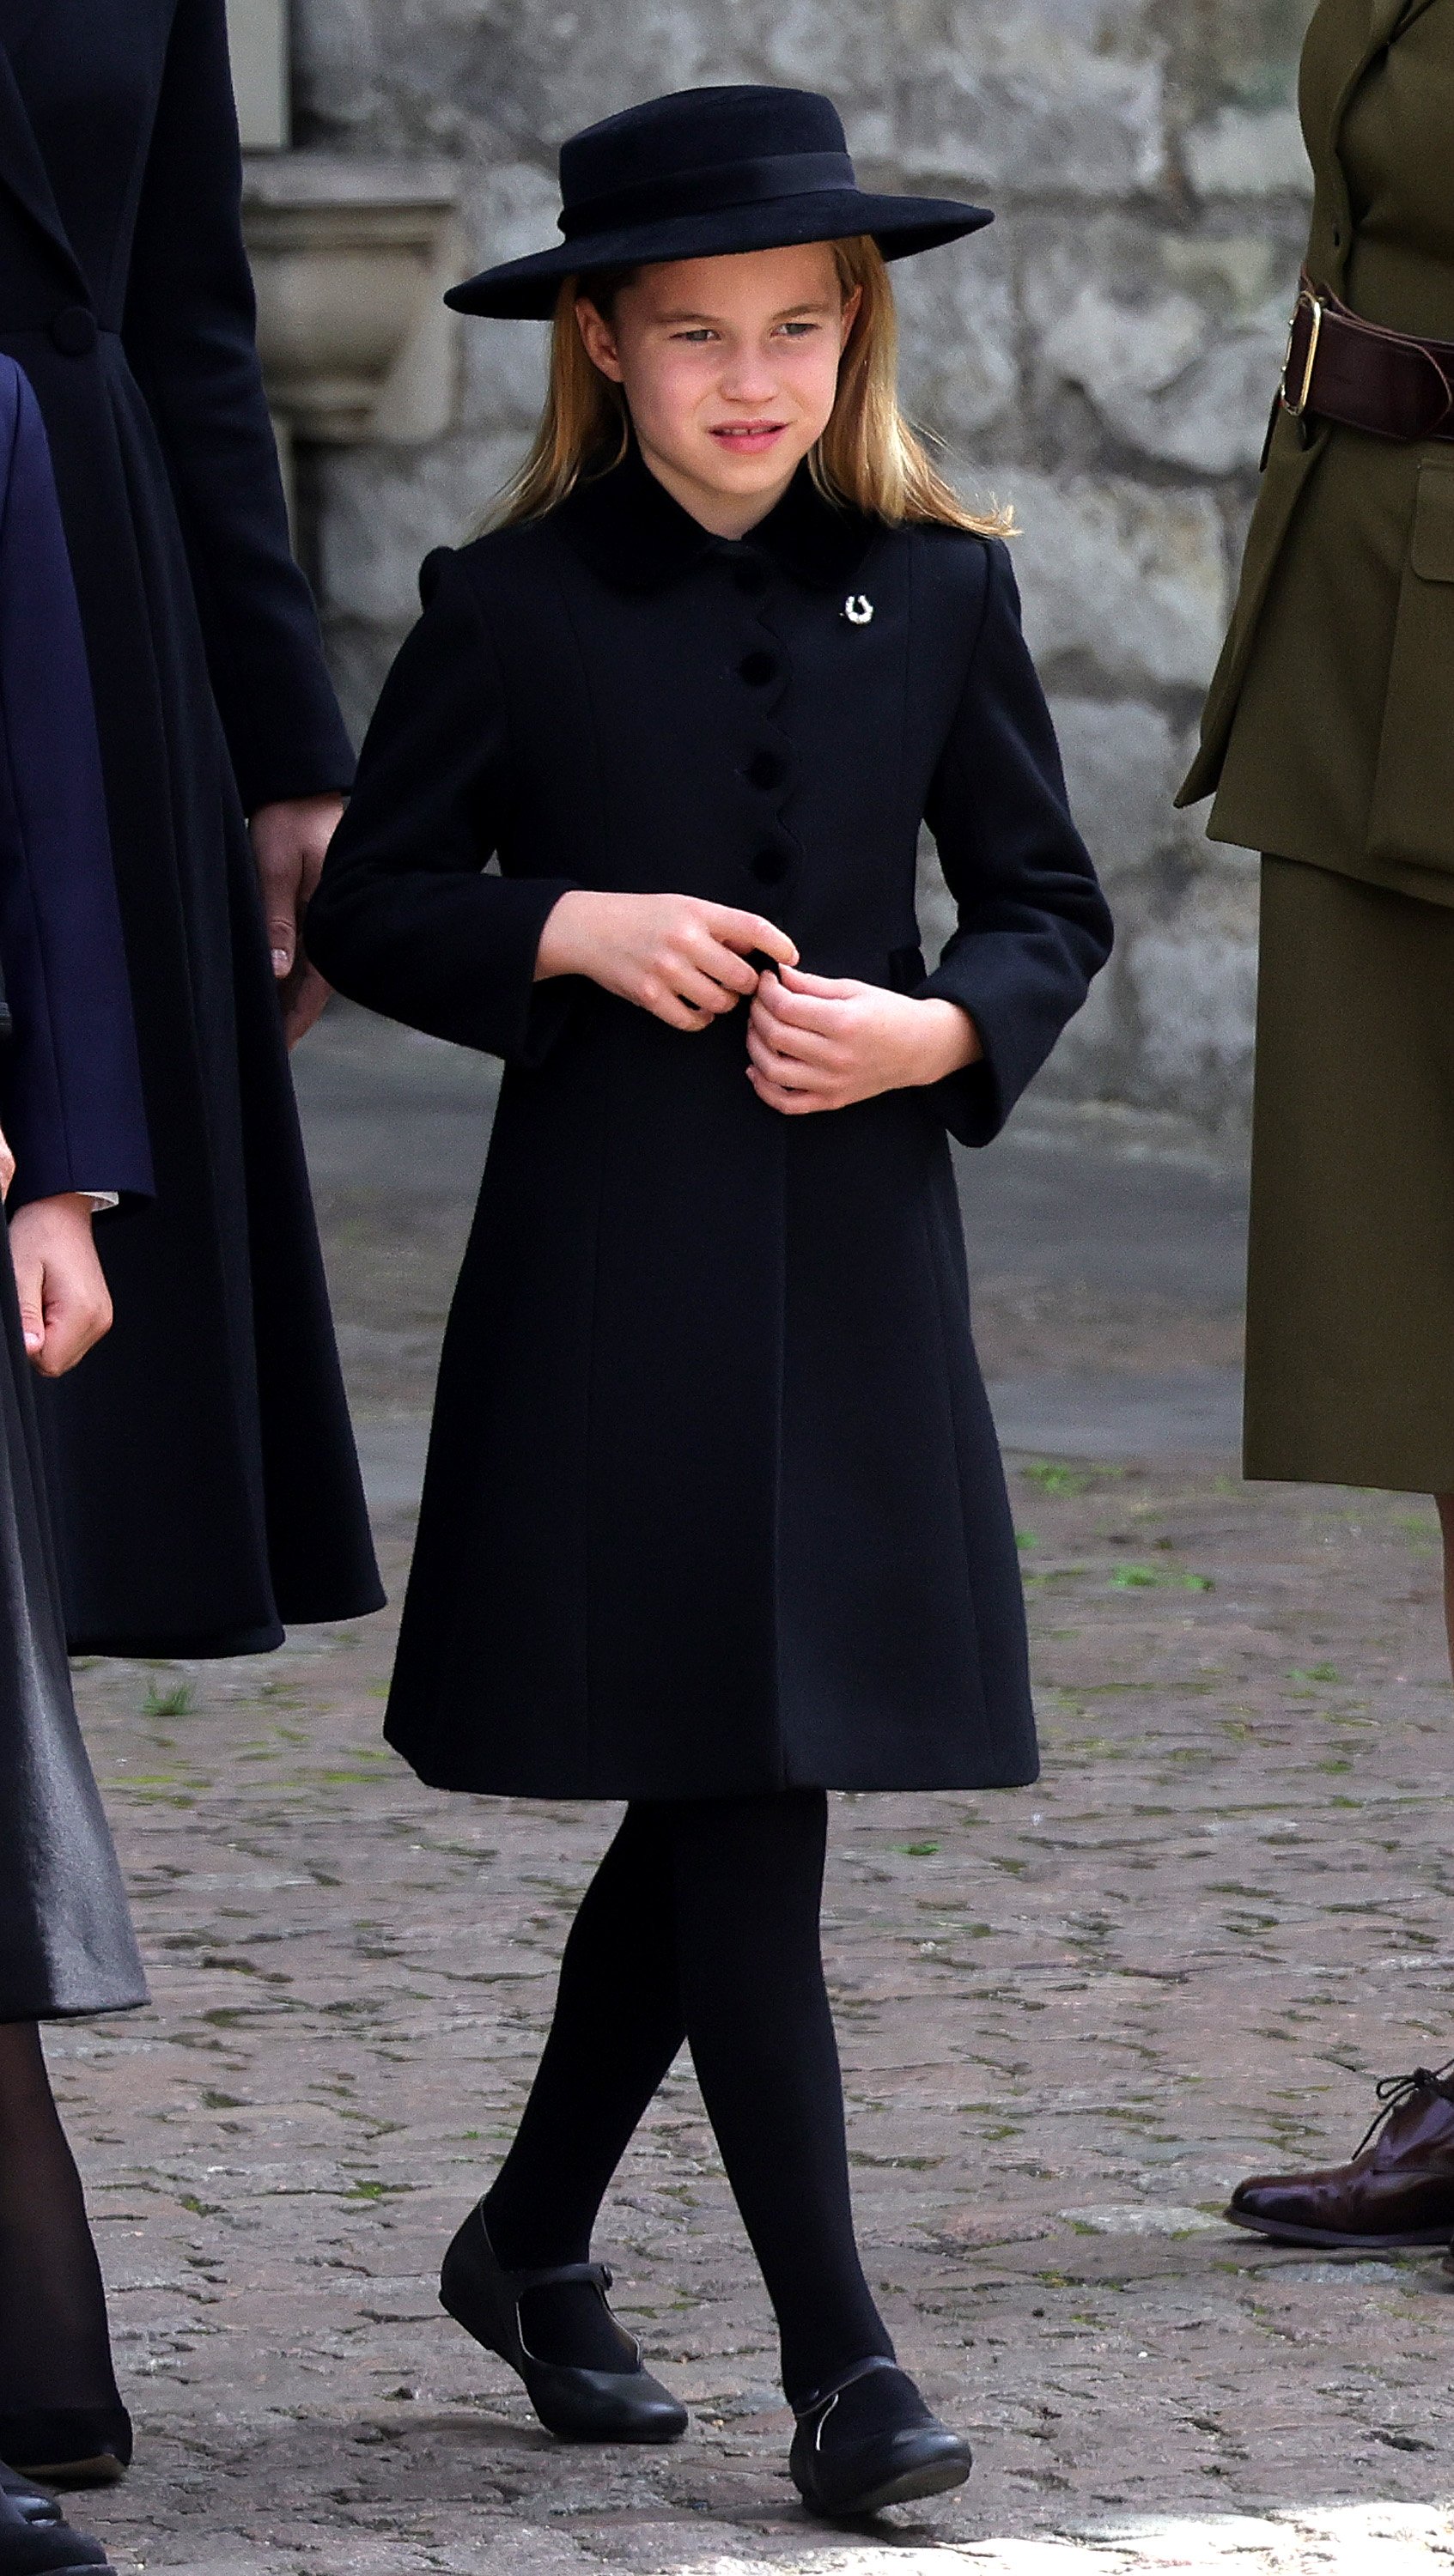 La princesa Charlotte durante el funeral de estado de la reina Elizabeth II en la Abadía de Westminster, el 19 de septiembre de 2022 en Londres, Inglaterra. | Foto: Getty Images